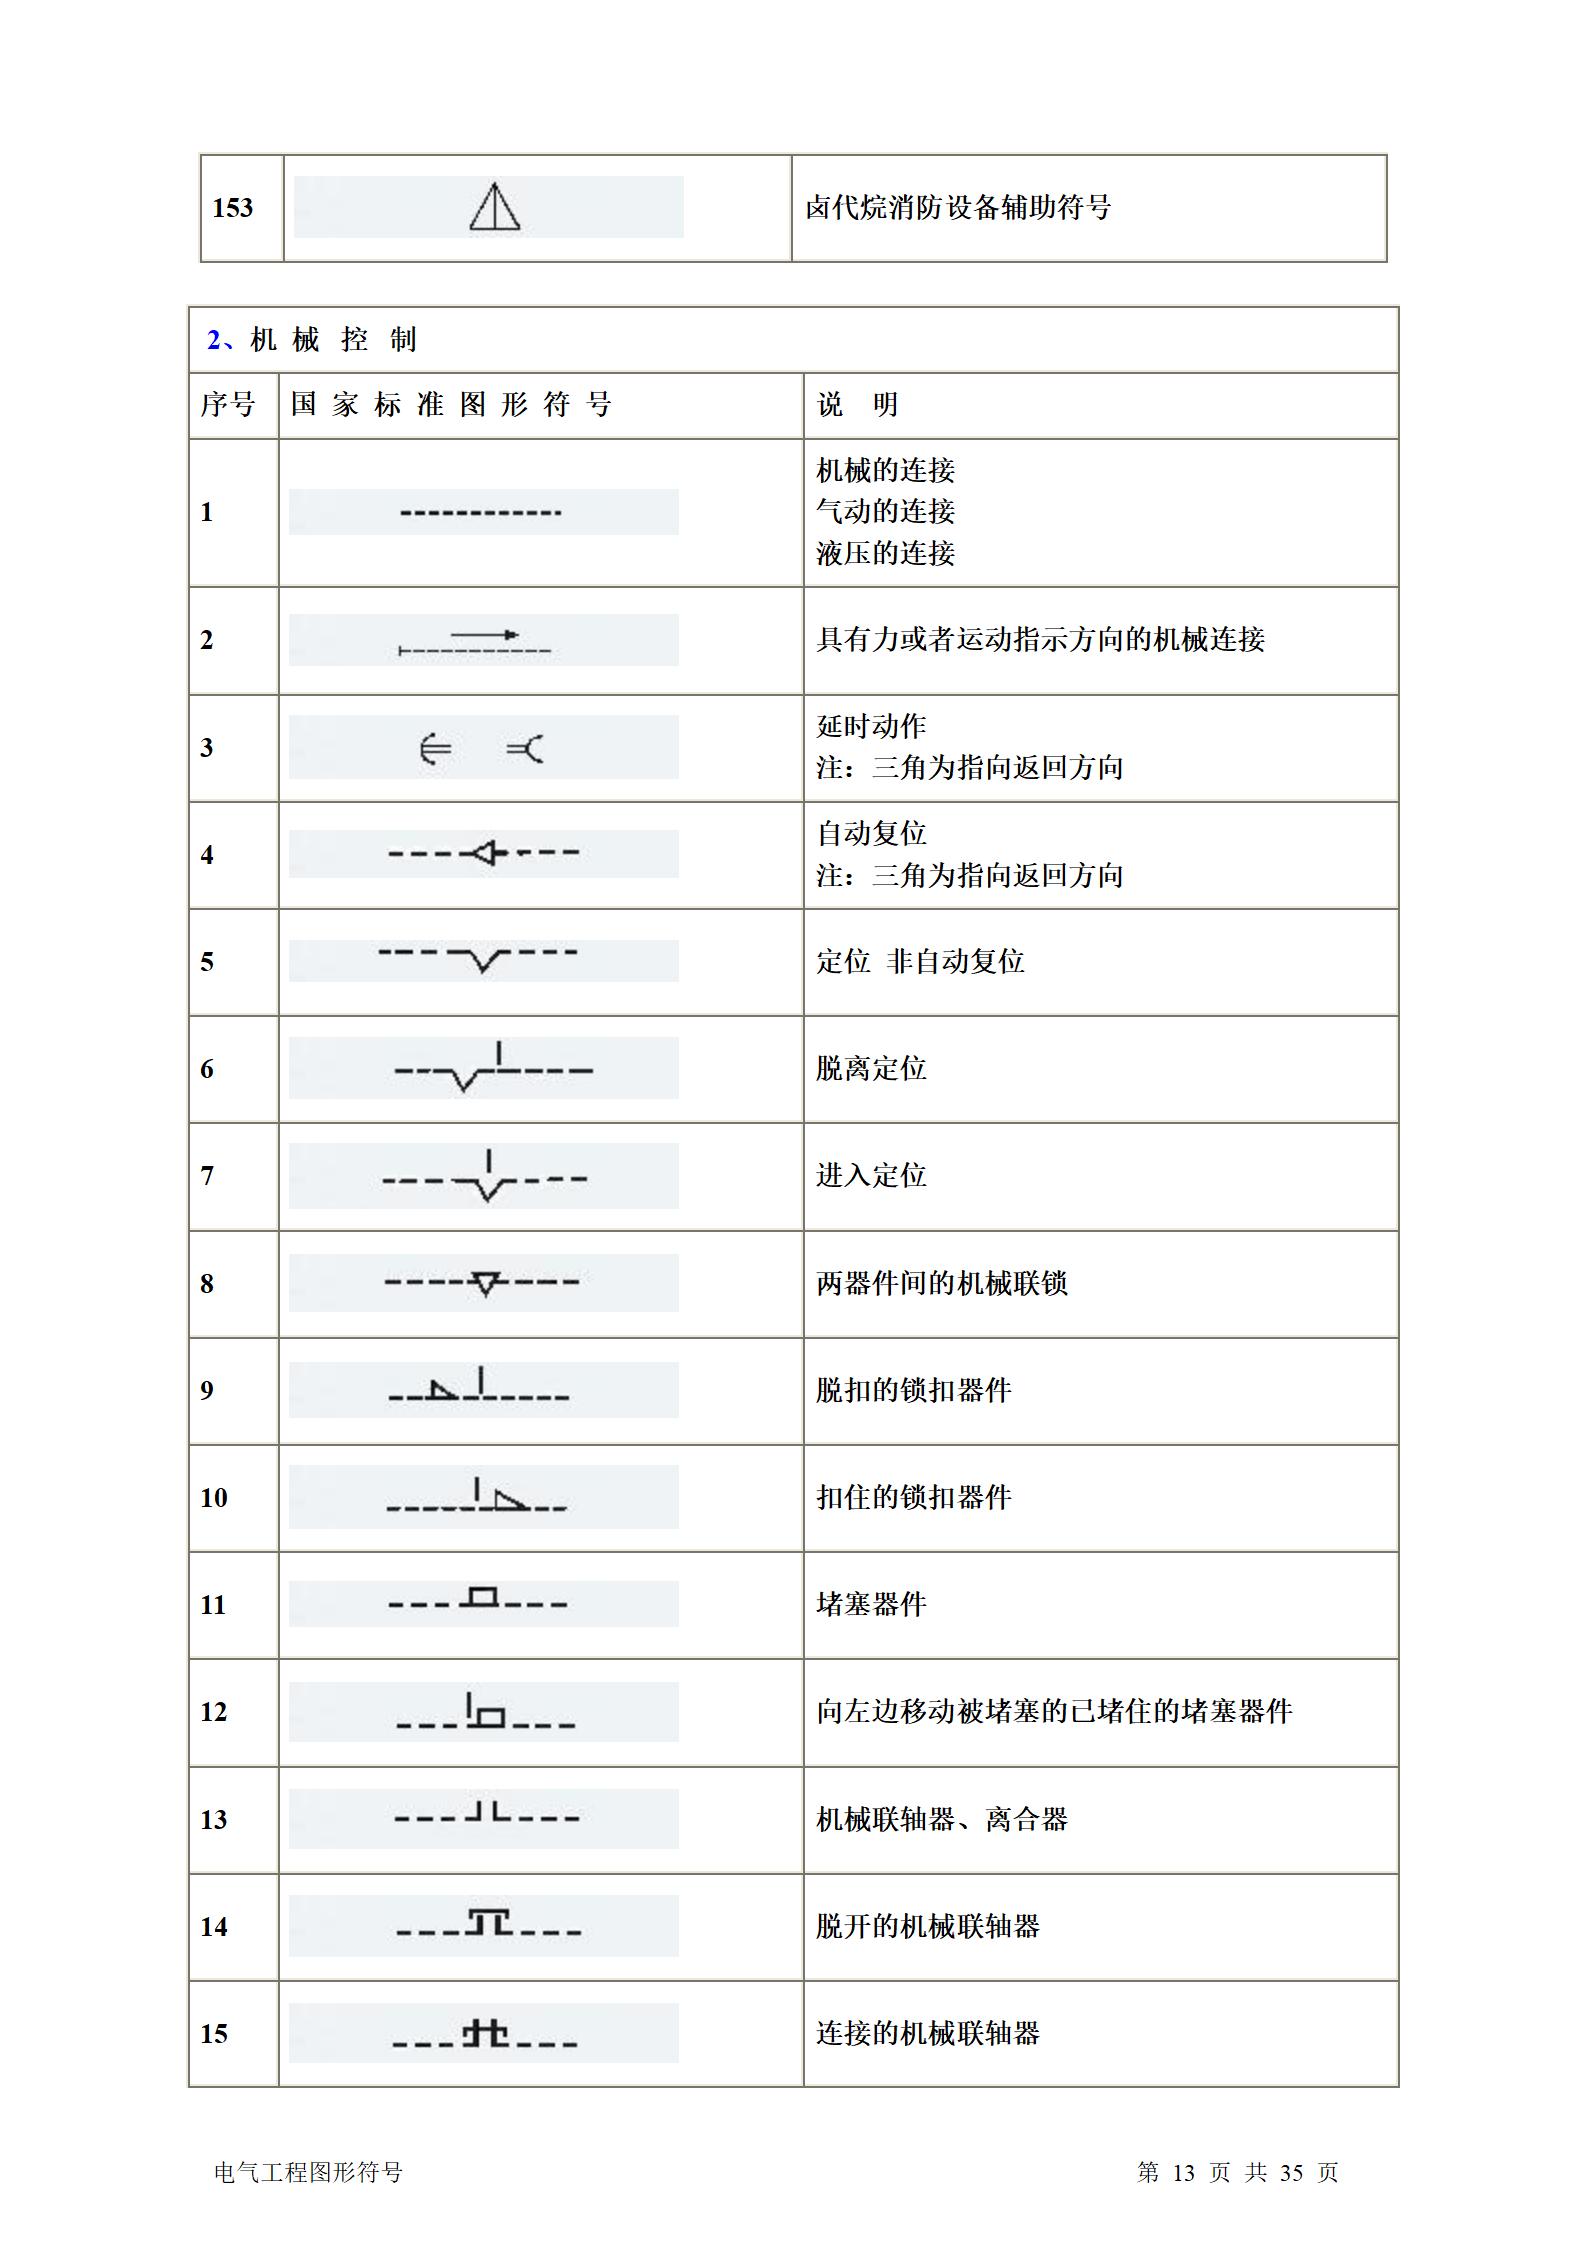 建筑电气、水暖、通风工程图形符号大全word版插图(13)